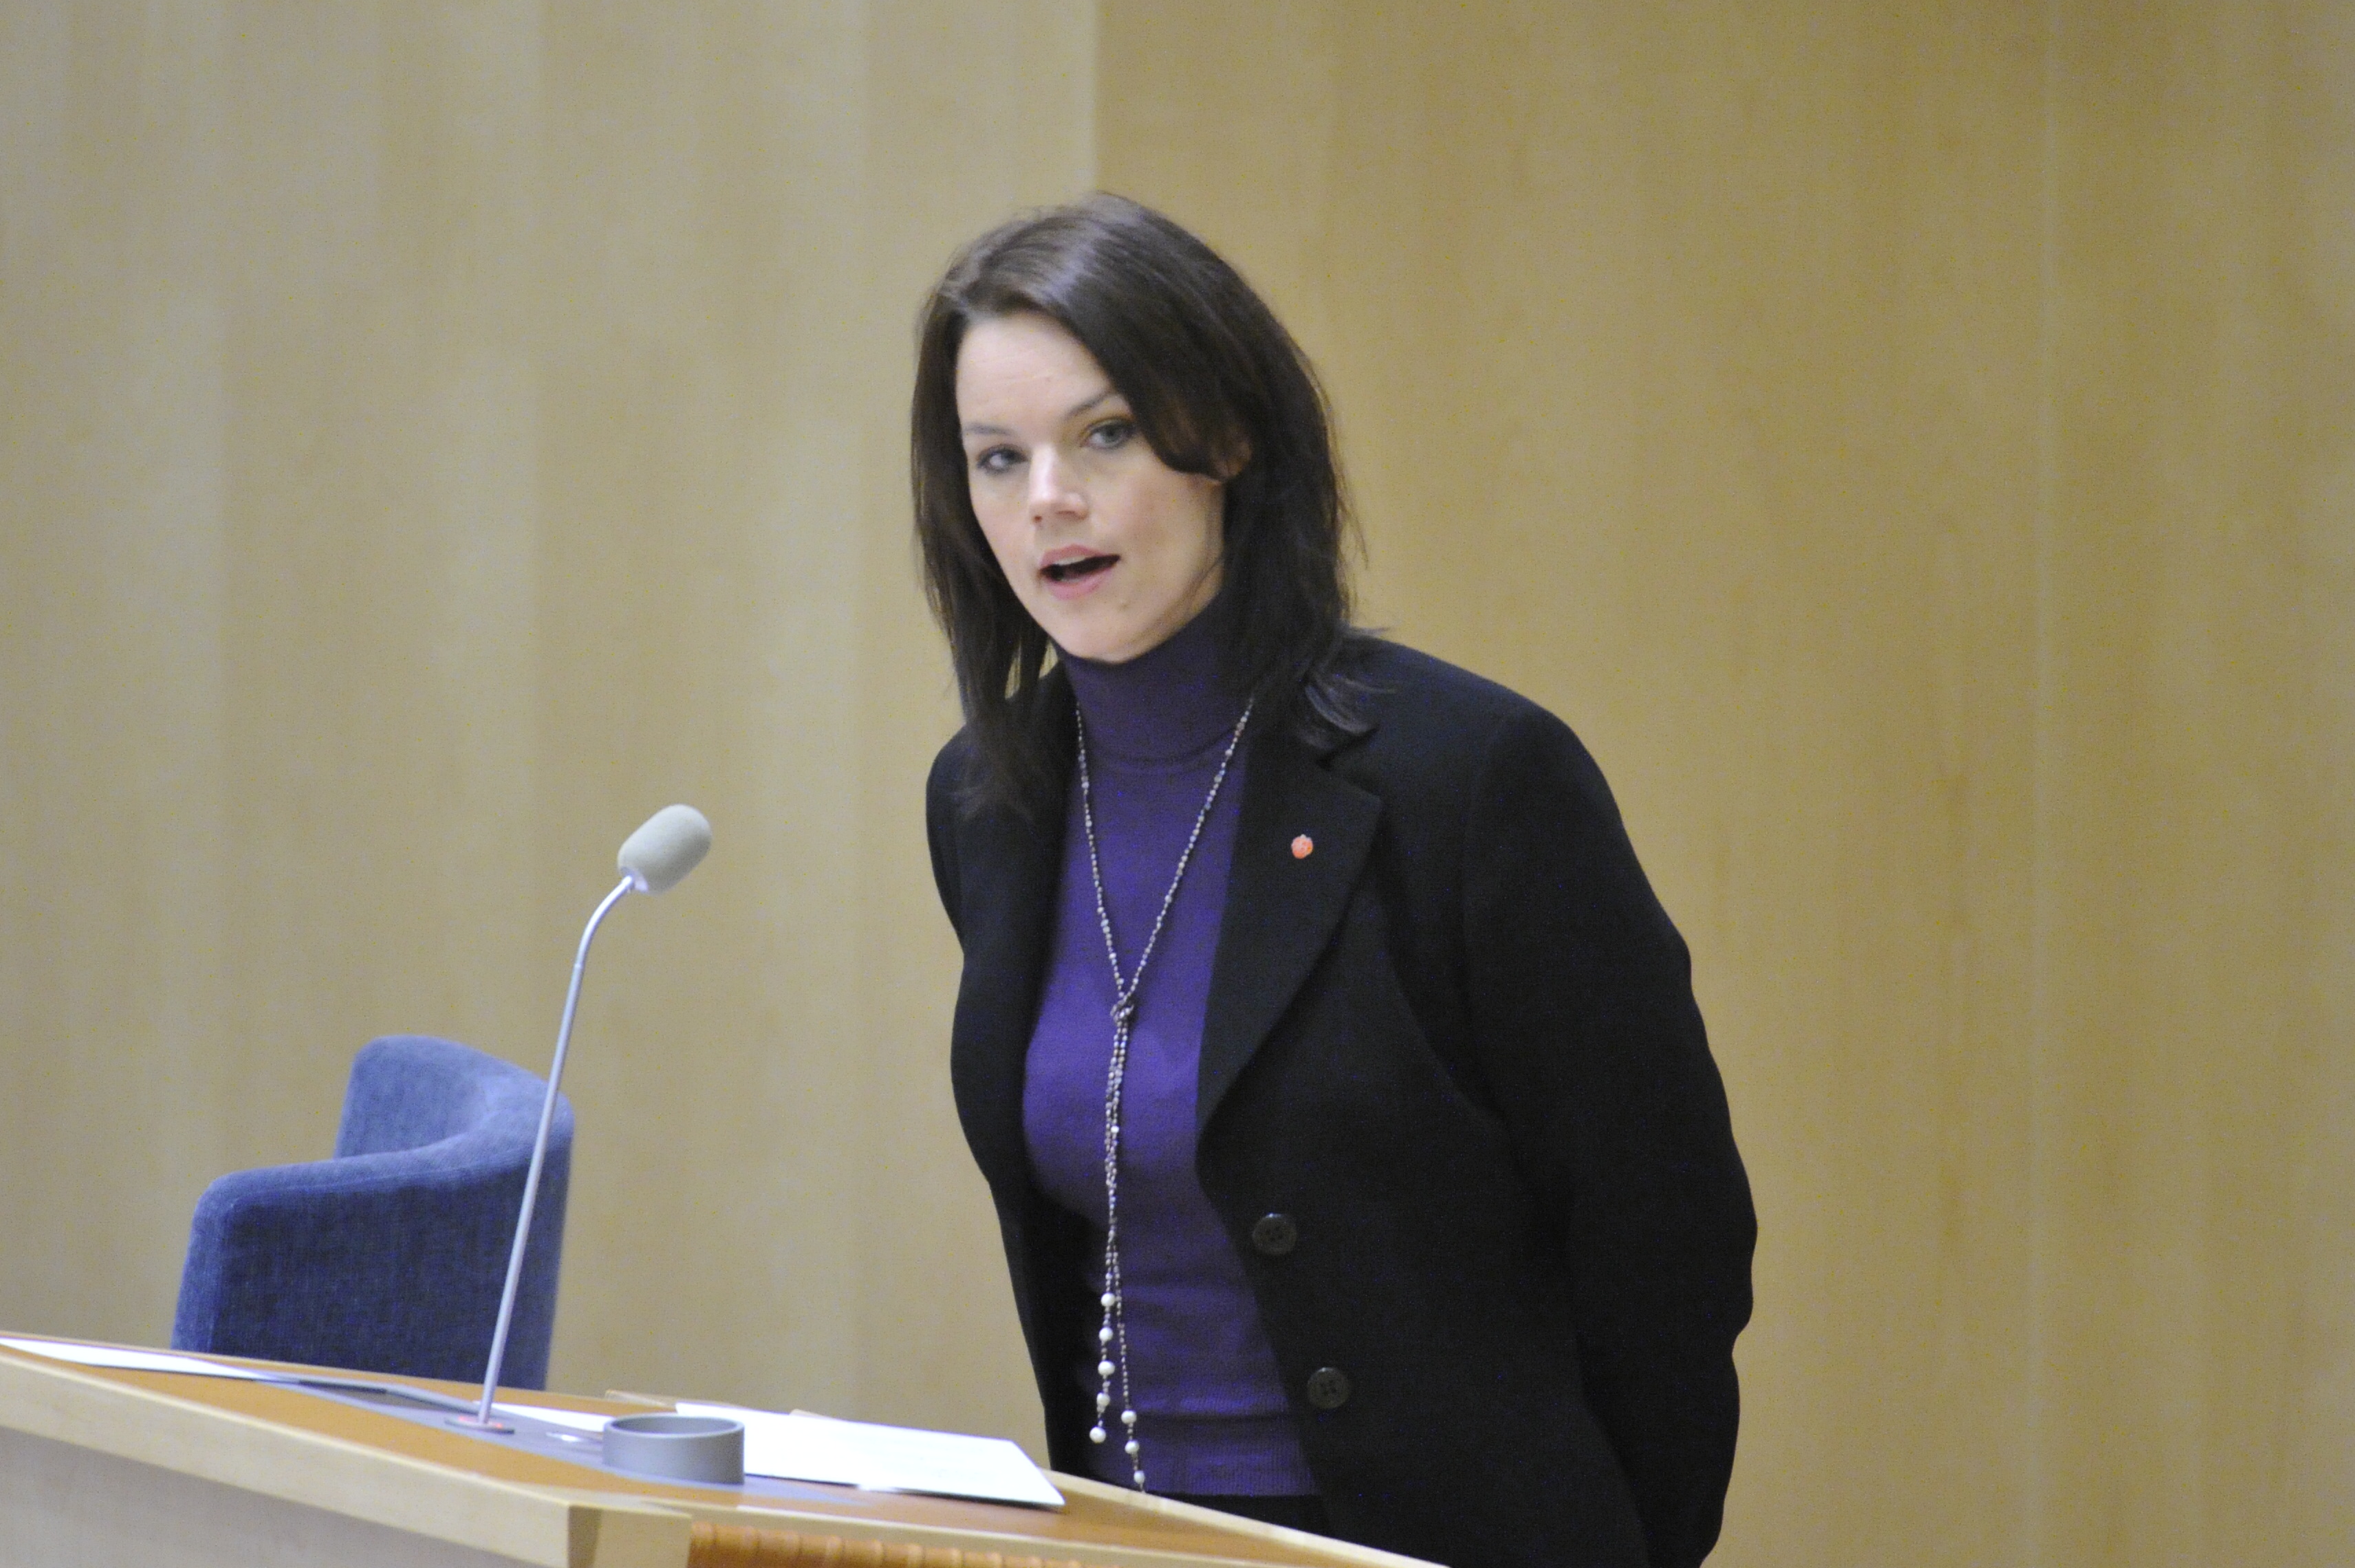 Veronica Palm, Riksdagsvalet 2010, Regeringen, Utförsäkrad, Försäkringskassan, Sjukförsäkring